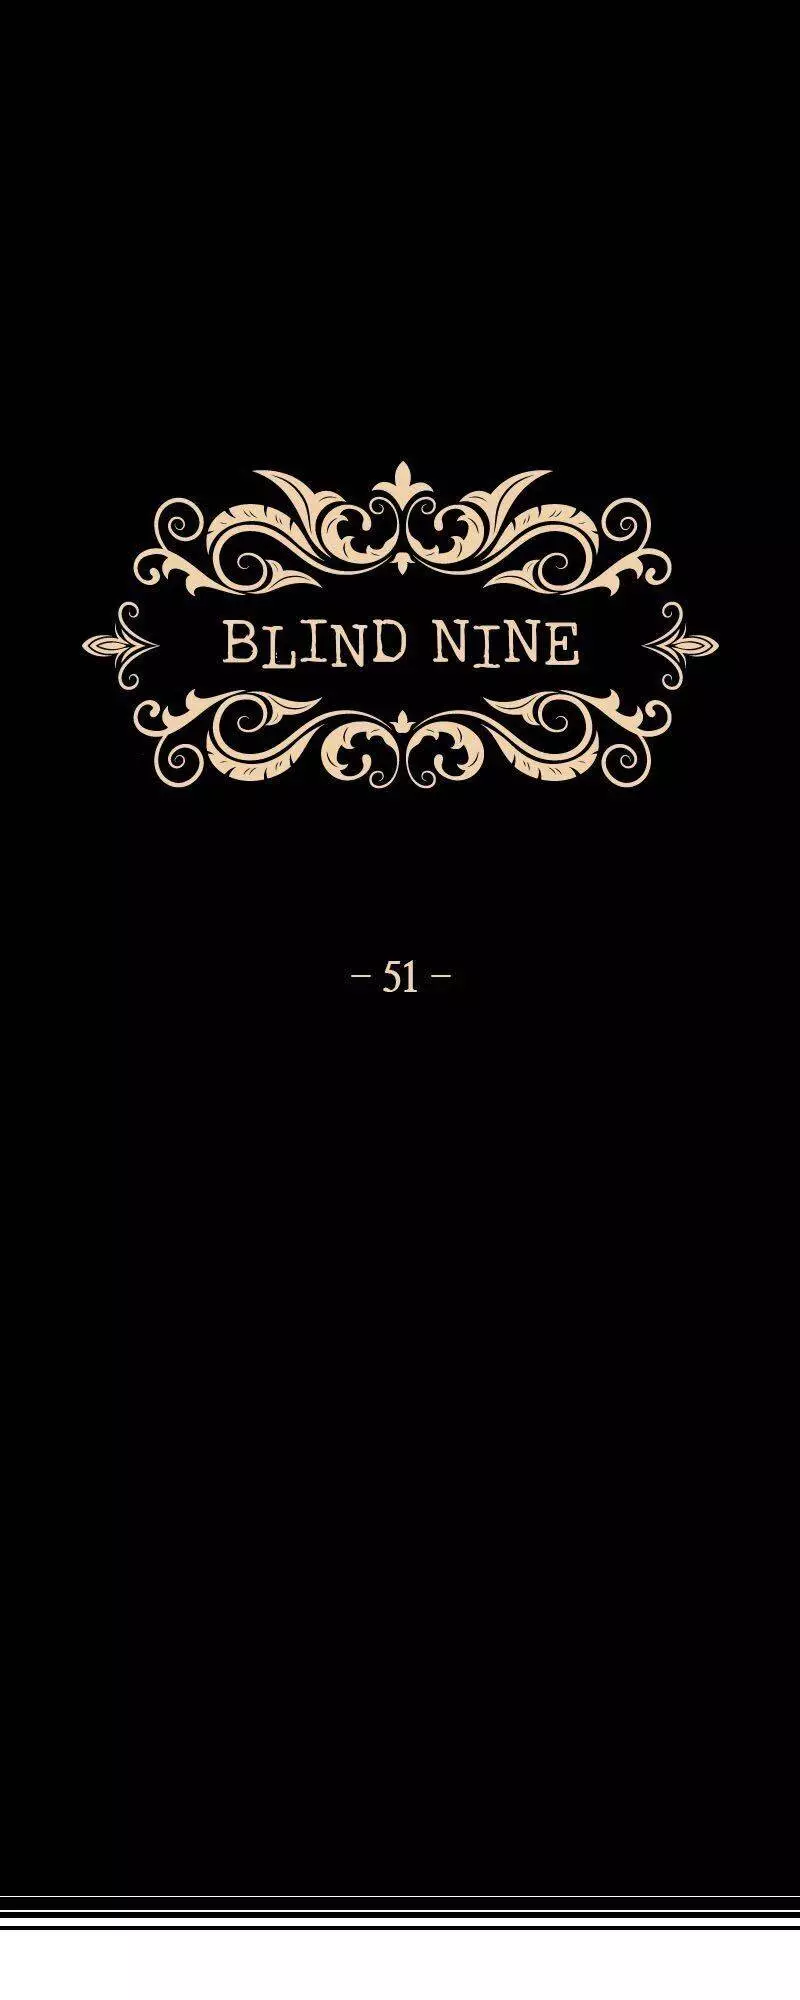 Blind Nine - 51 page 2-9e3dc7e2